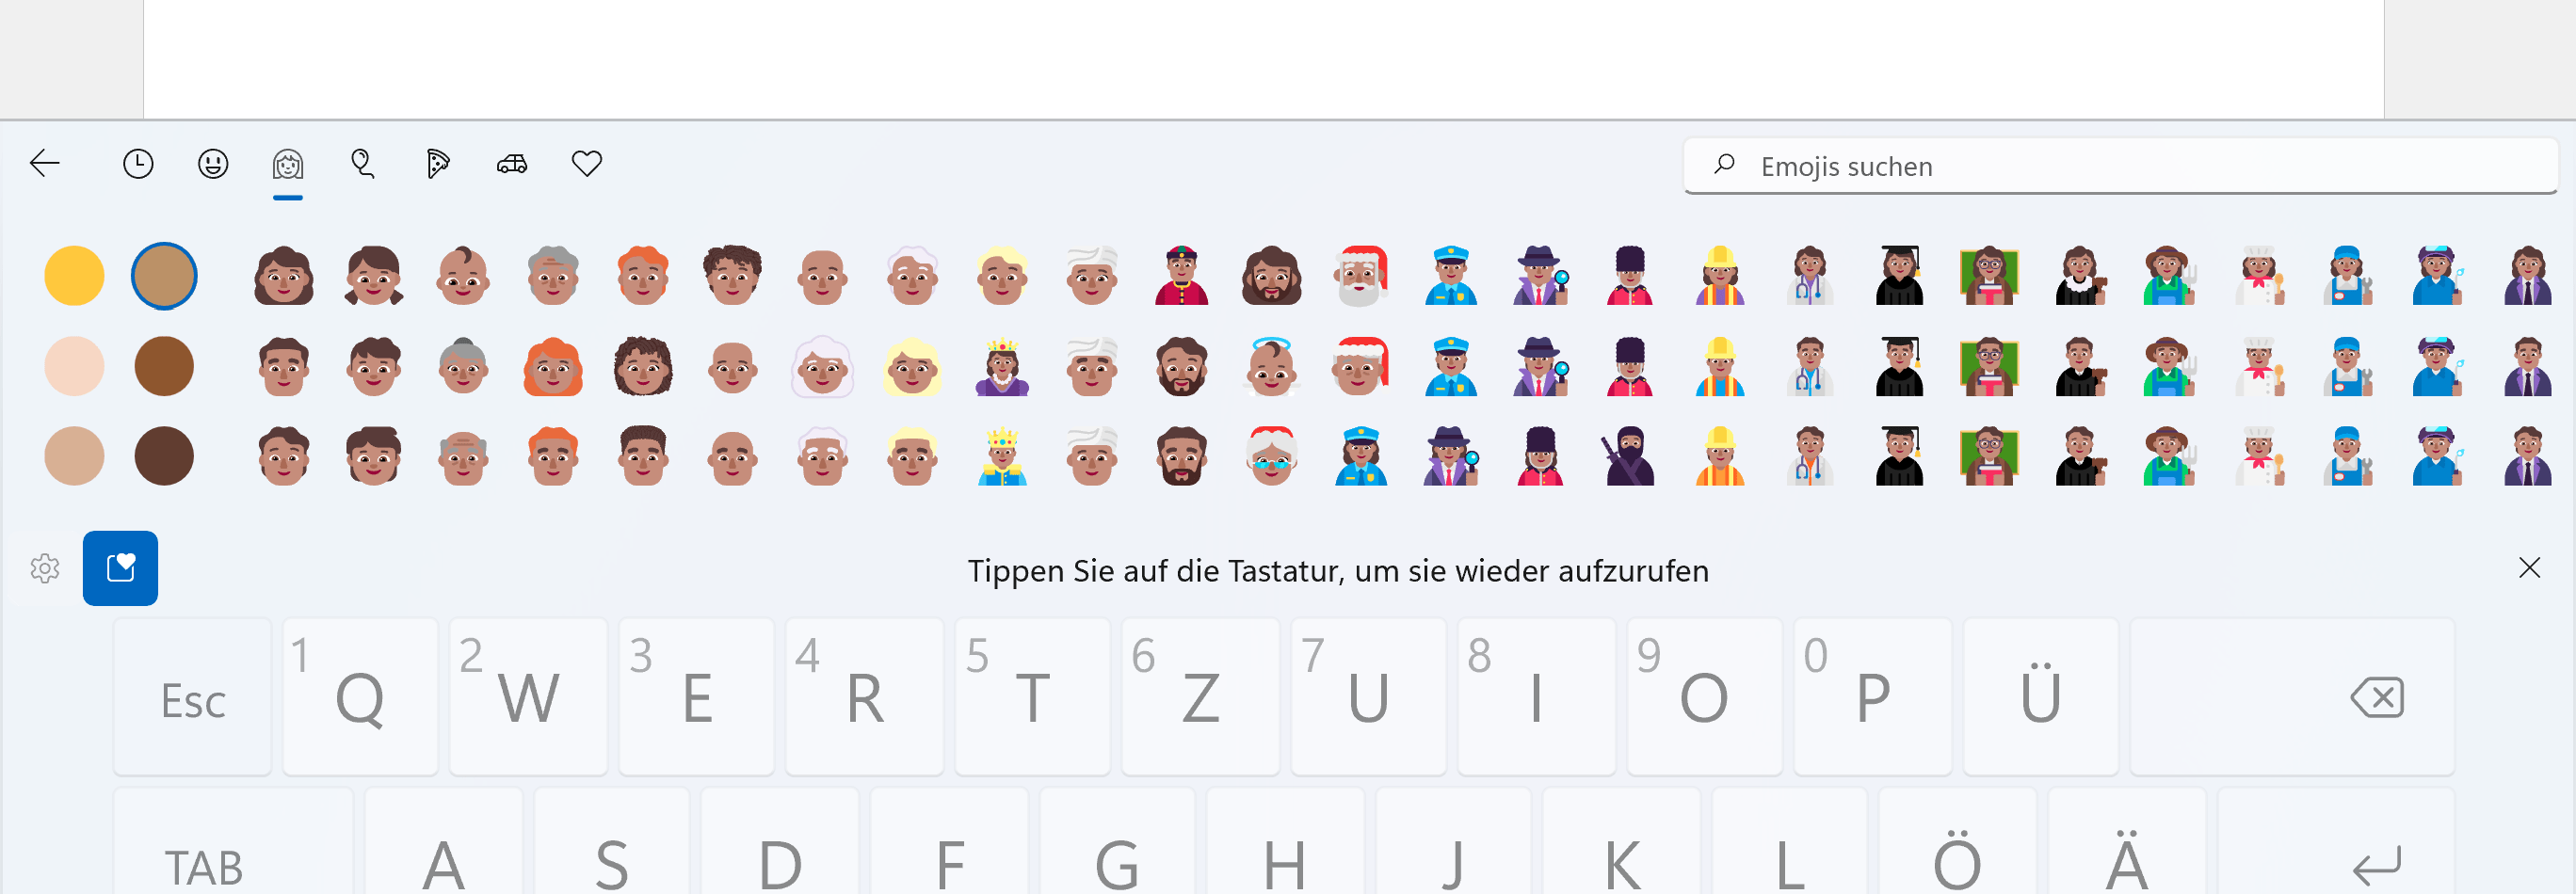 Emojis auf der Bildschirmtastatur von Windows